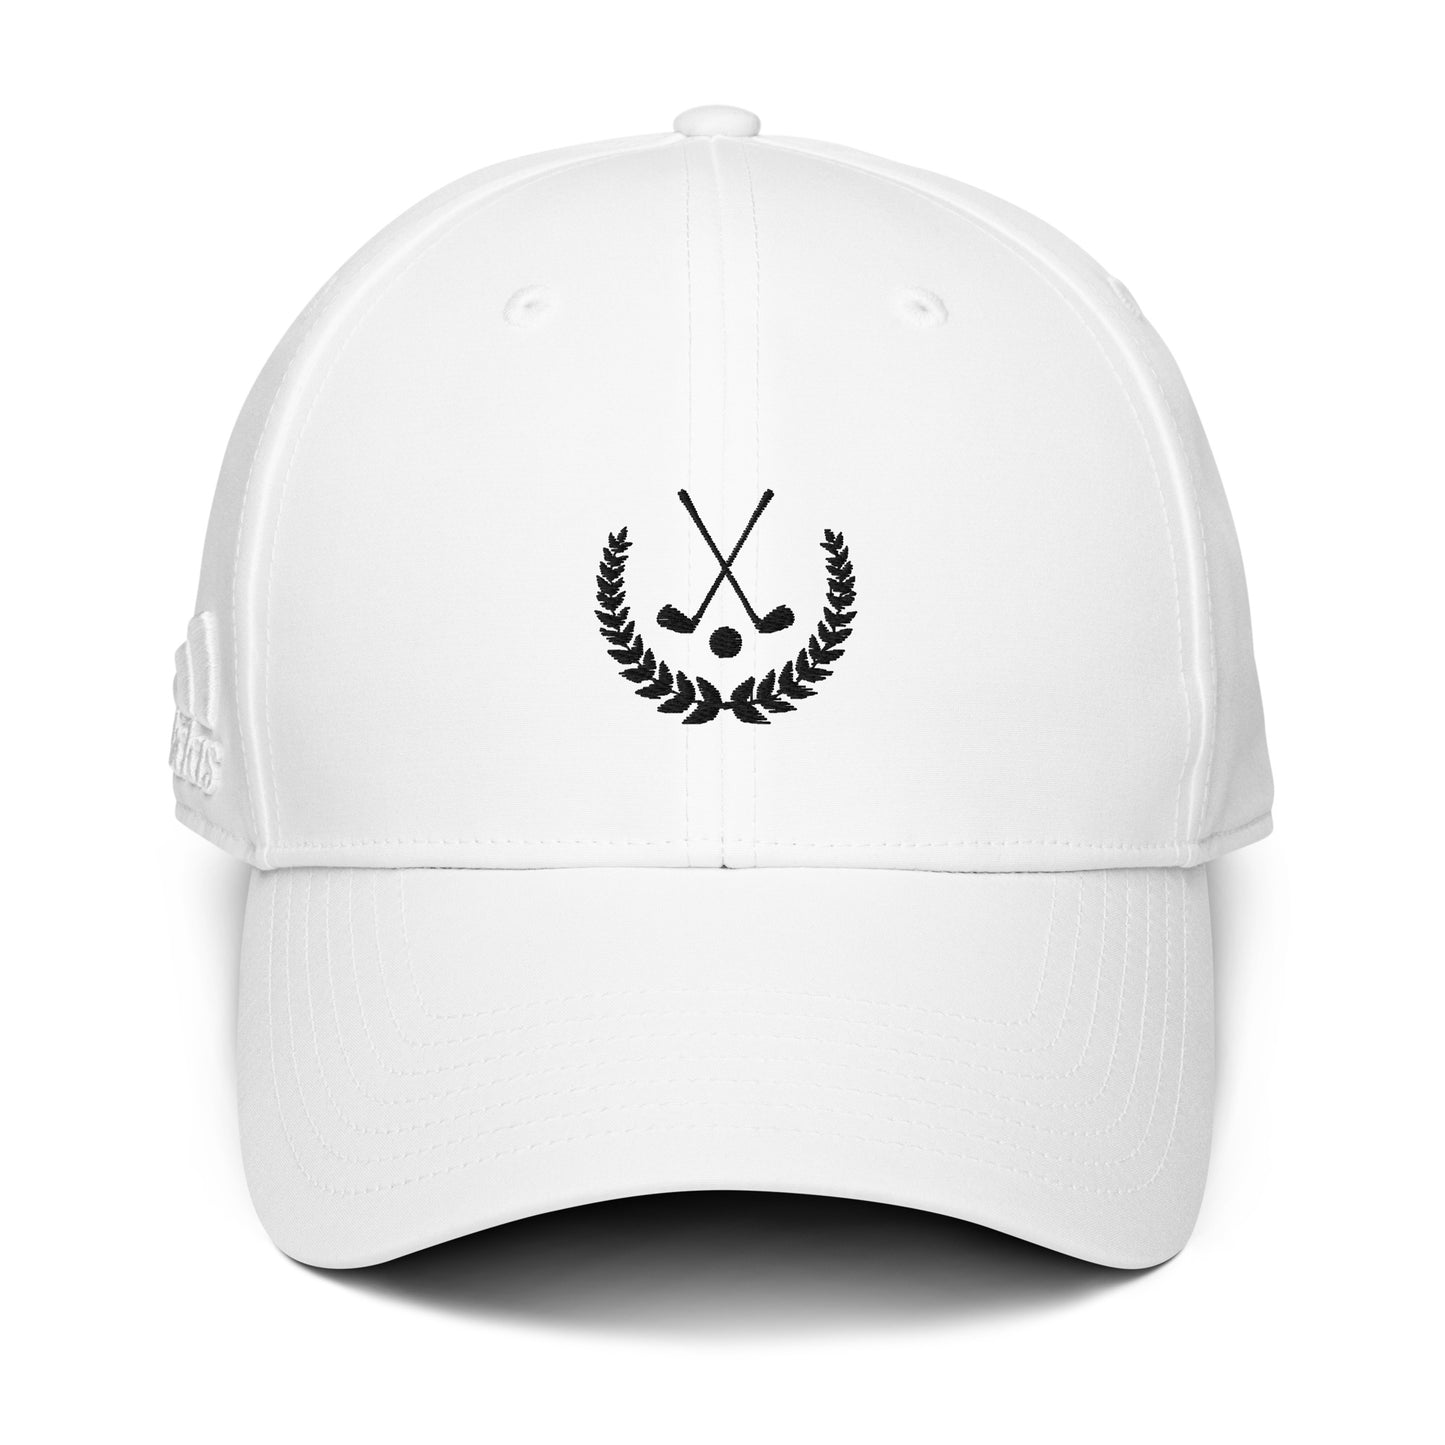 Golf Crest Adidas Hat